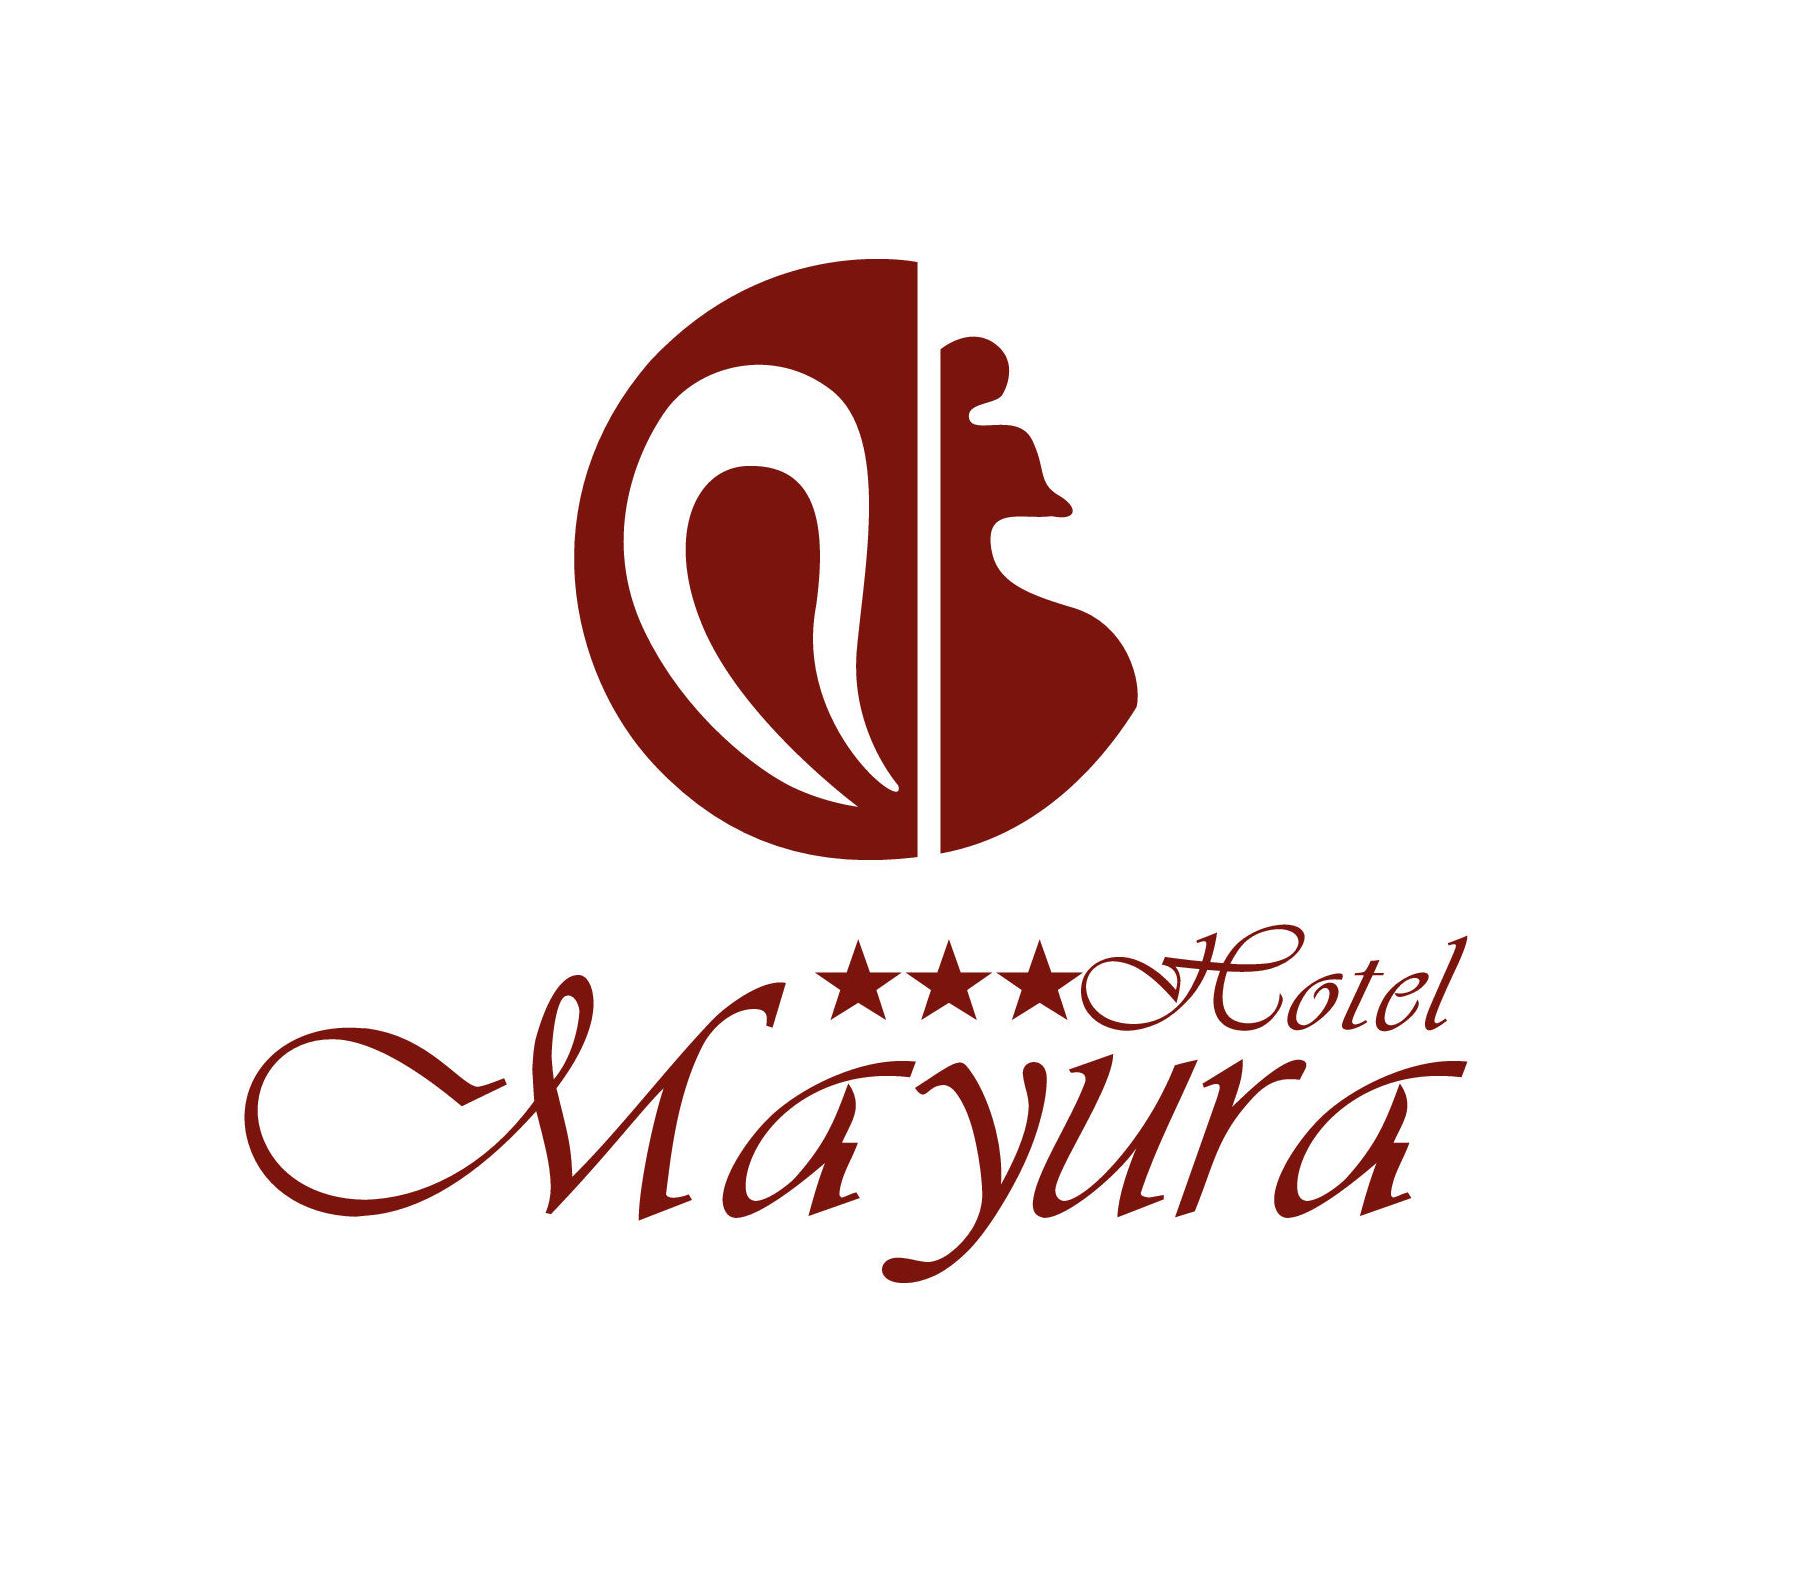 Mayura Hotel